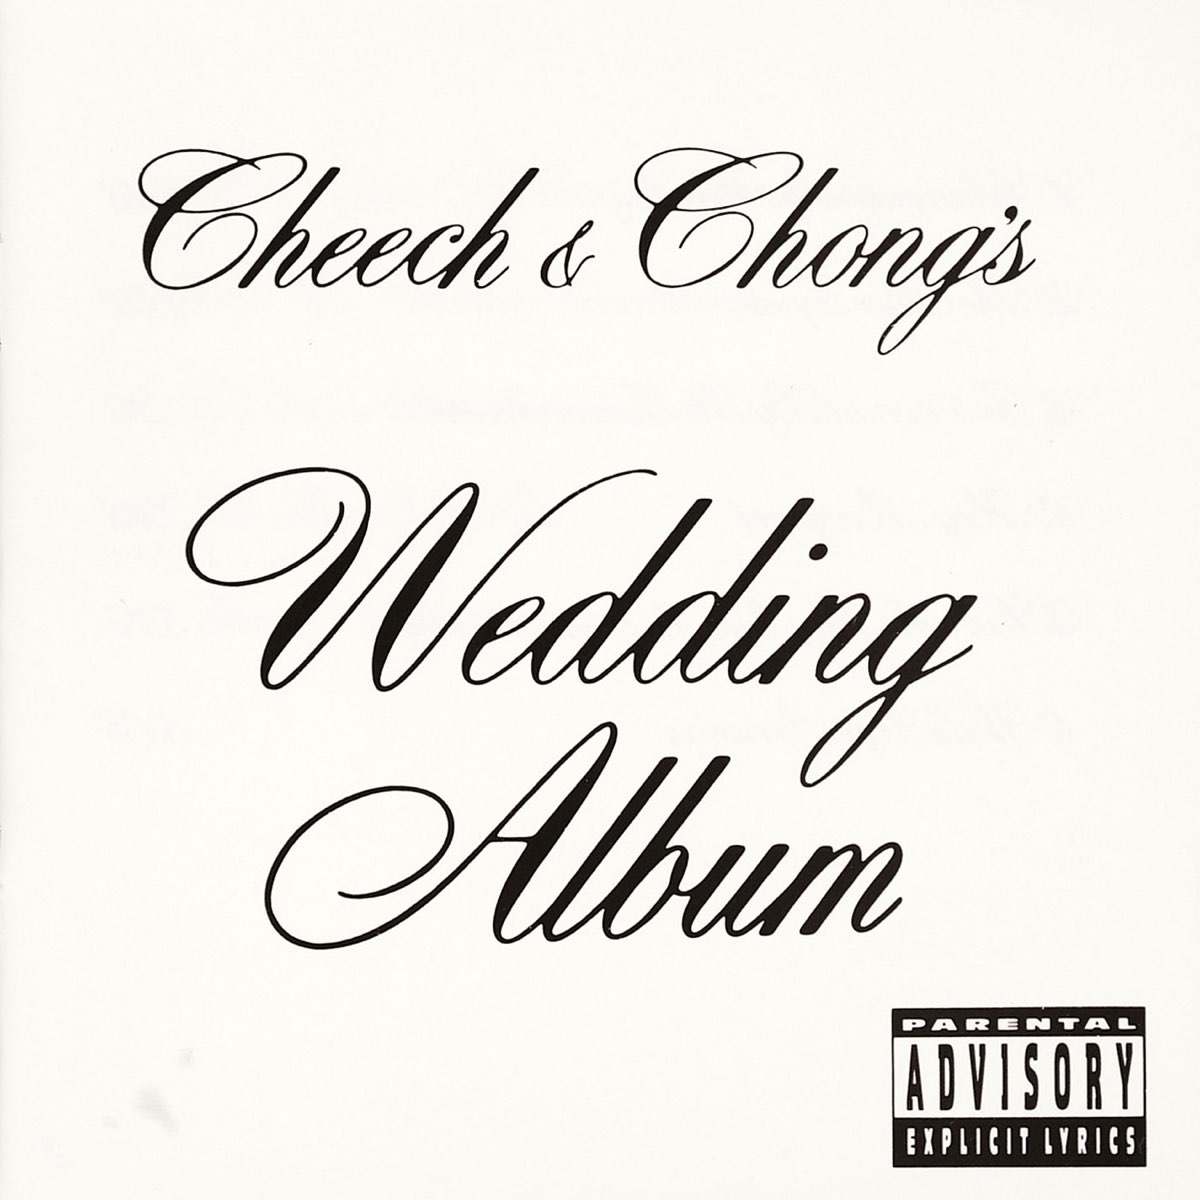 Cheech & Chong's Wedding Album - Album by Cheech & Chong - Apple Music